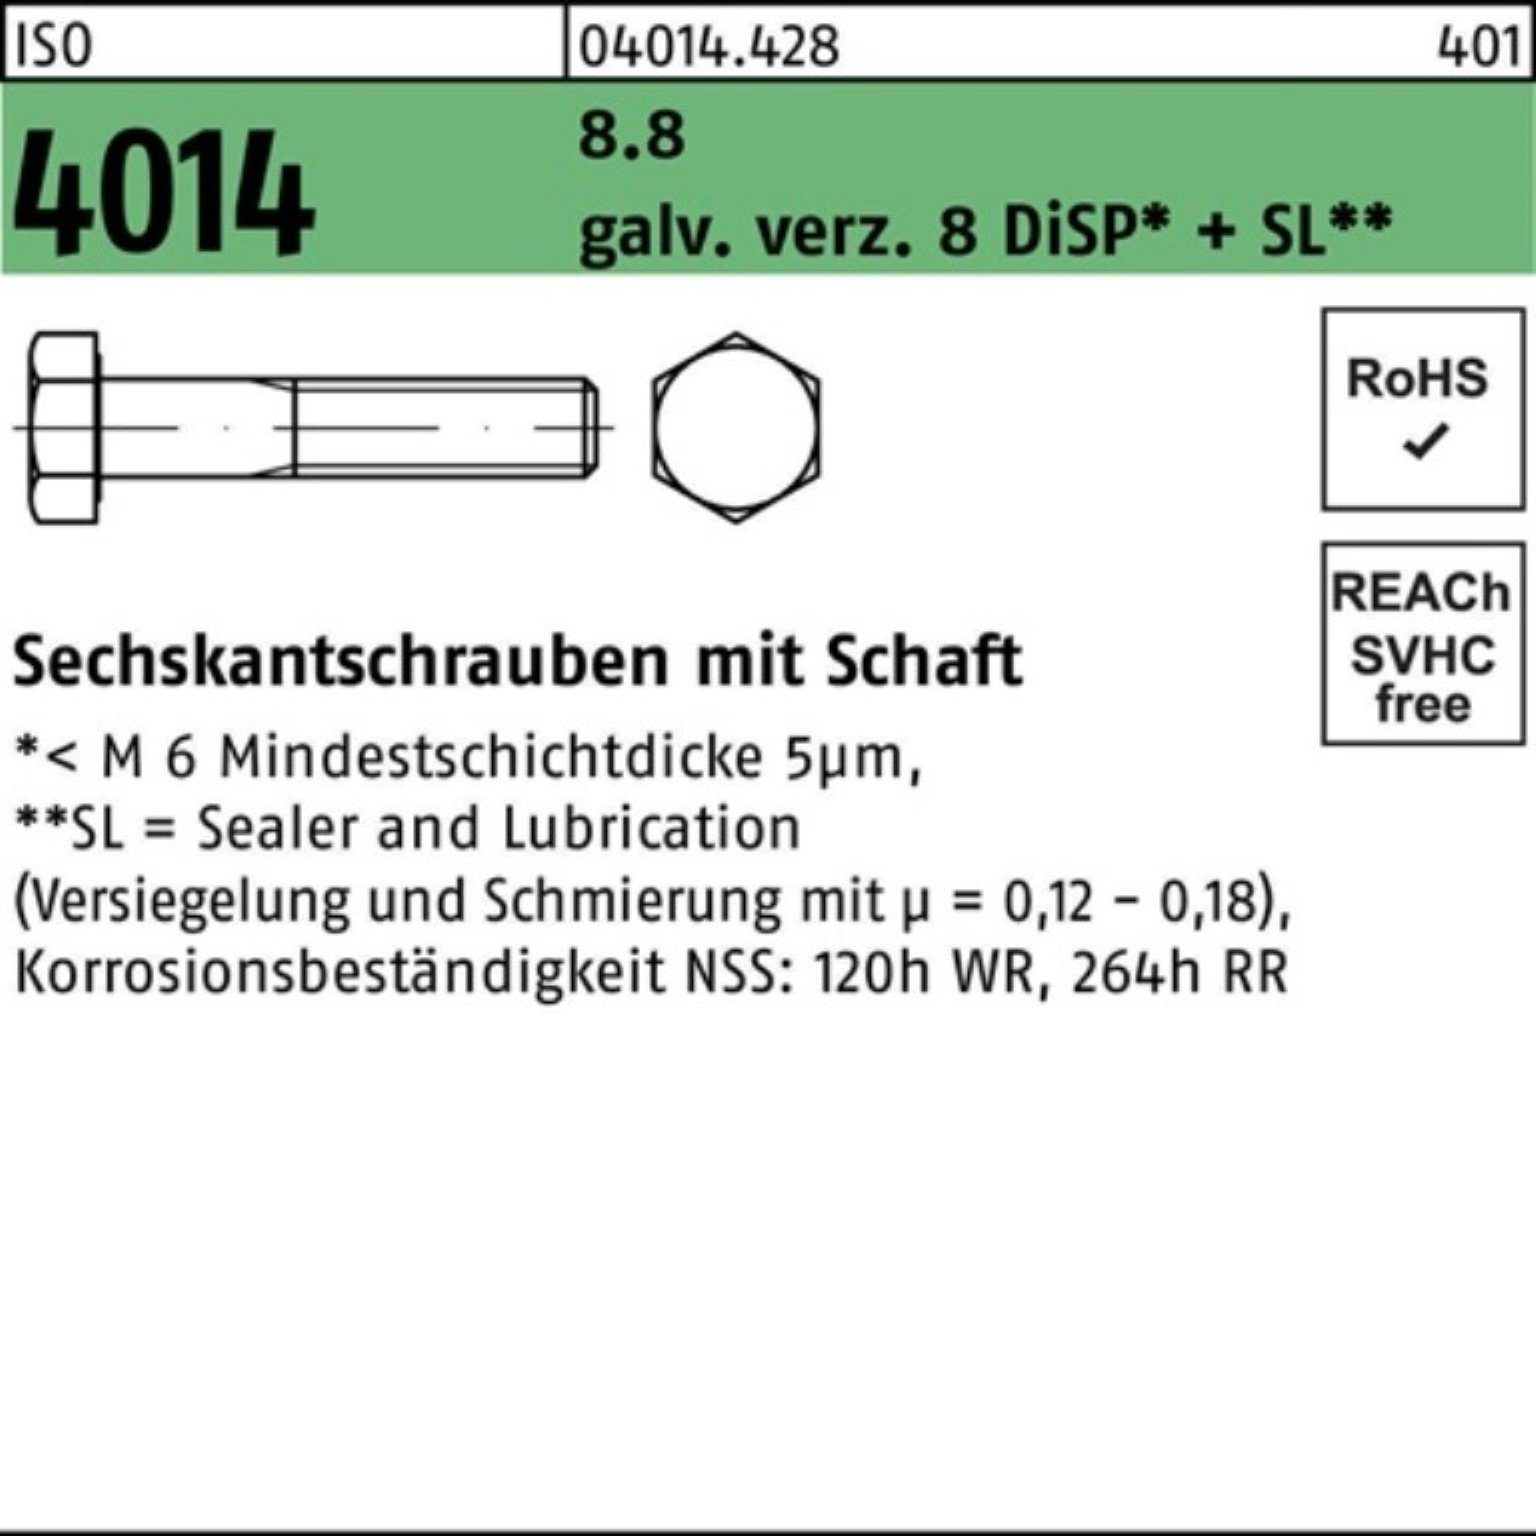 Bufab Sechskantschraube 100er Pack Sechskantschraube ISO 4014 Schaft M24x300 8.8 galv.verz. 8